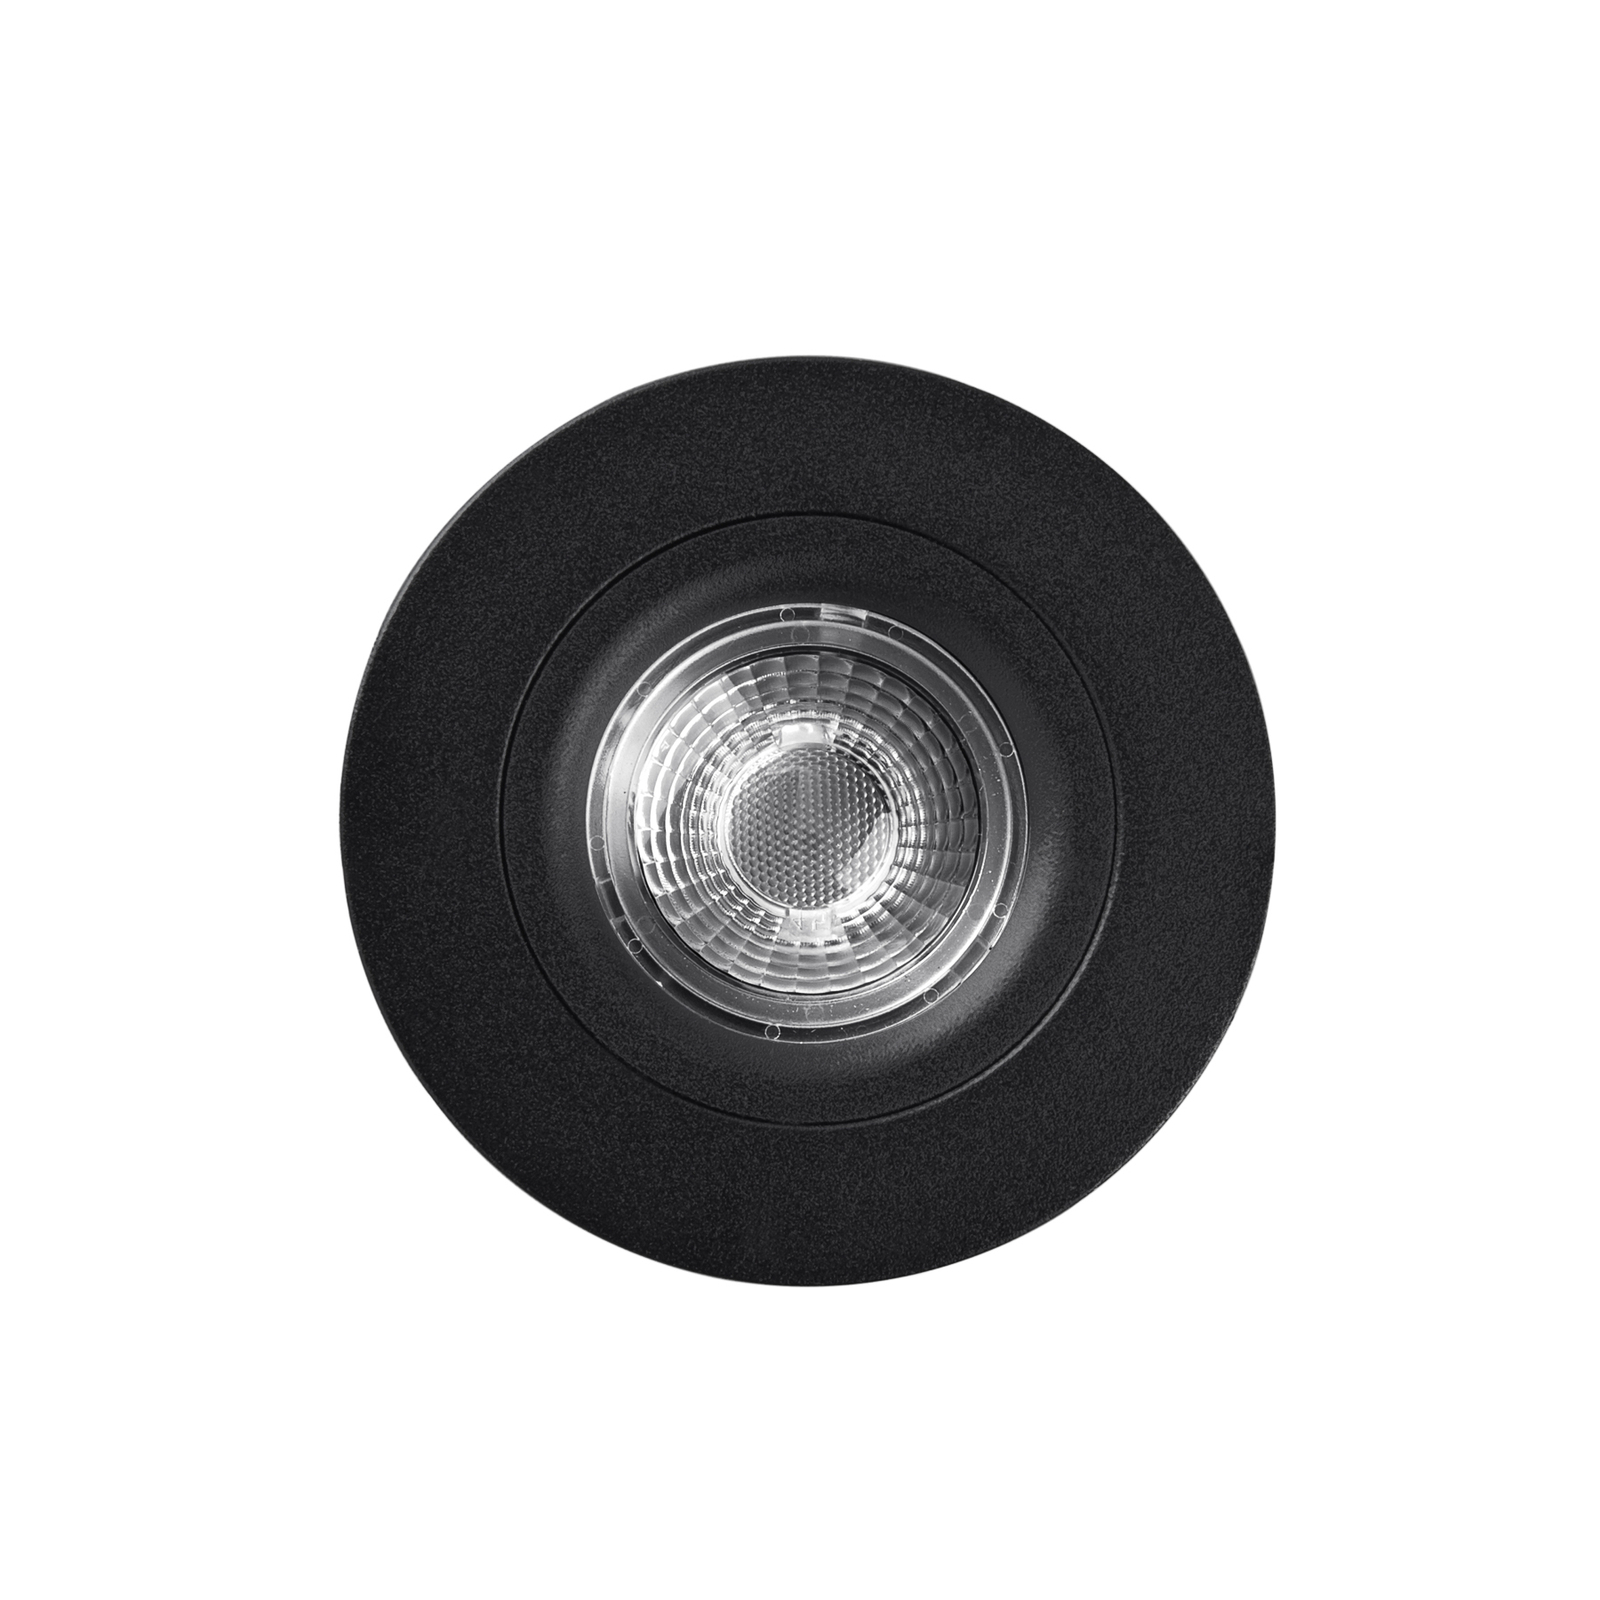 LED-kattouppovalaisin DL6809, pyöreä, musta